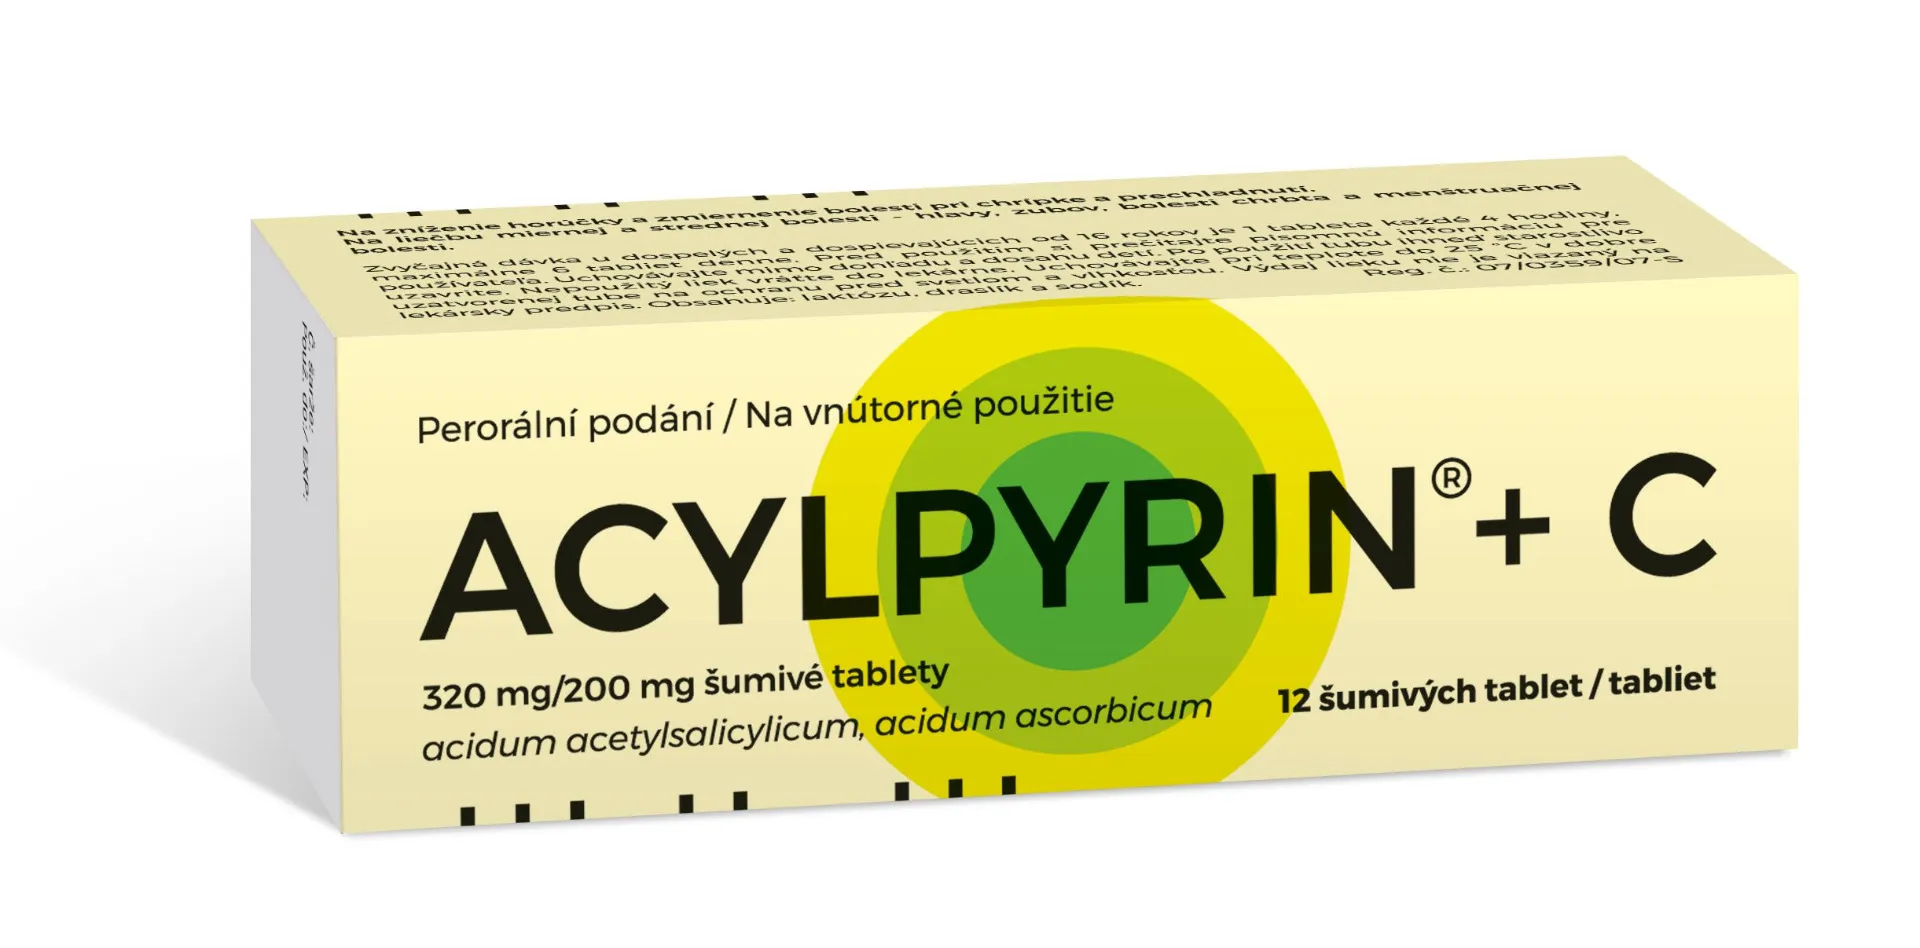 Acylpyrin + C